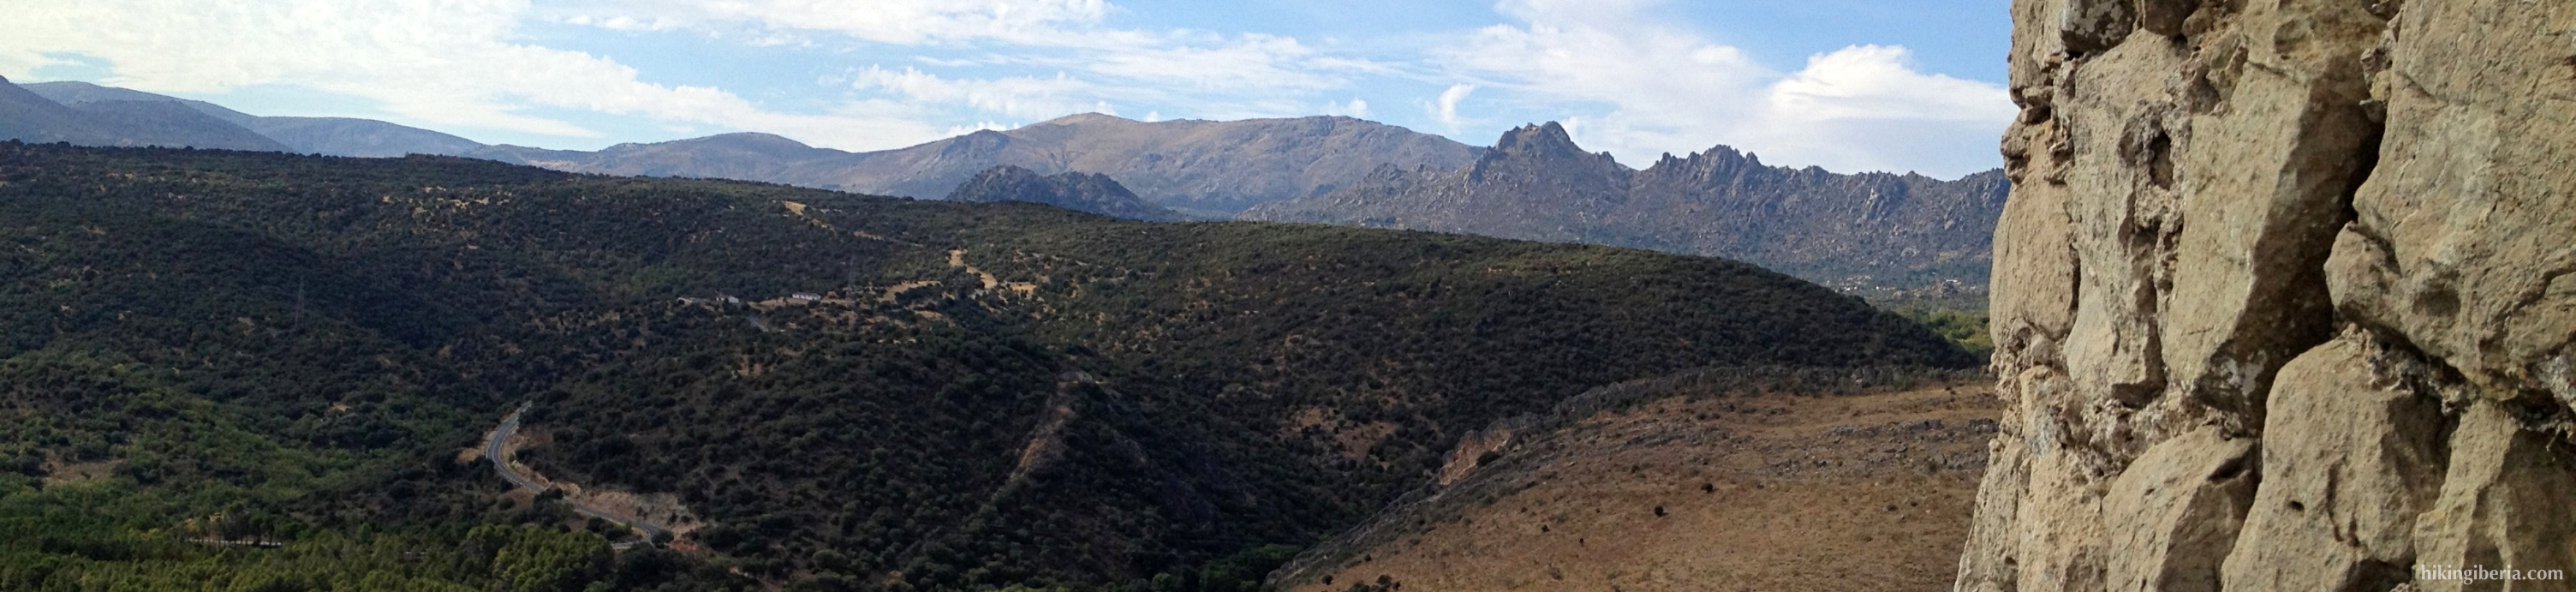 The Hills of Torrelaguna